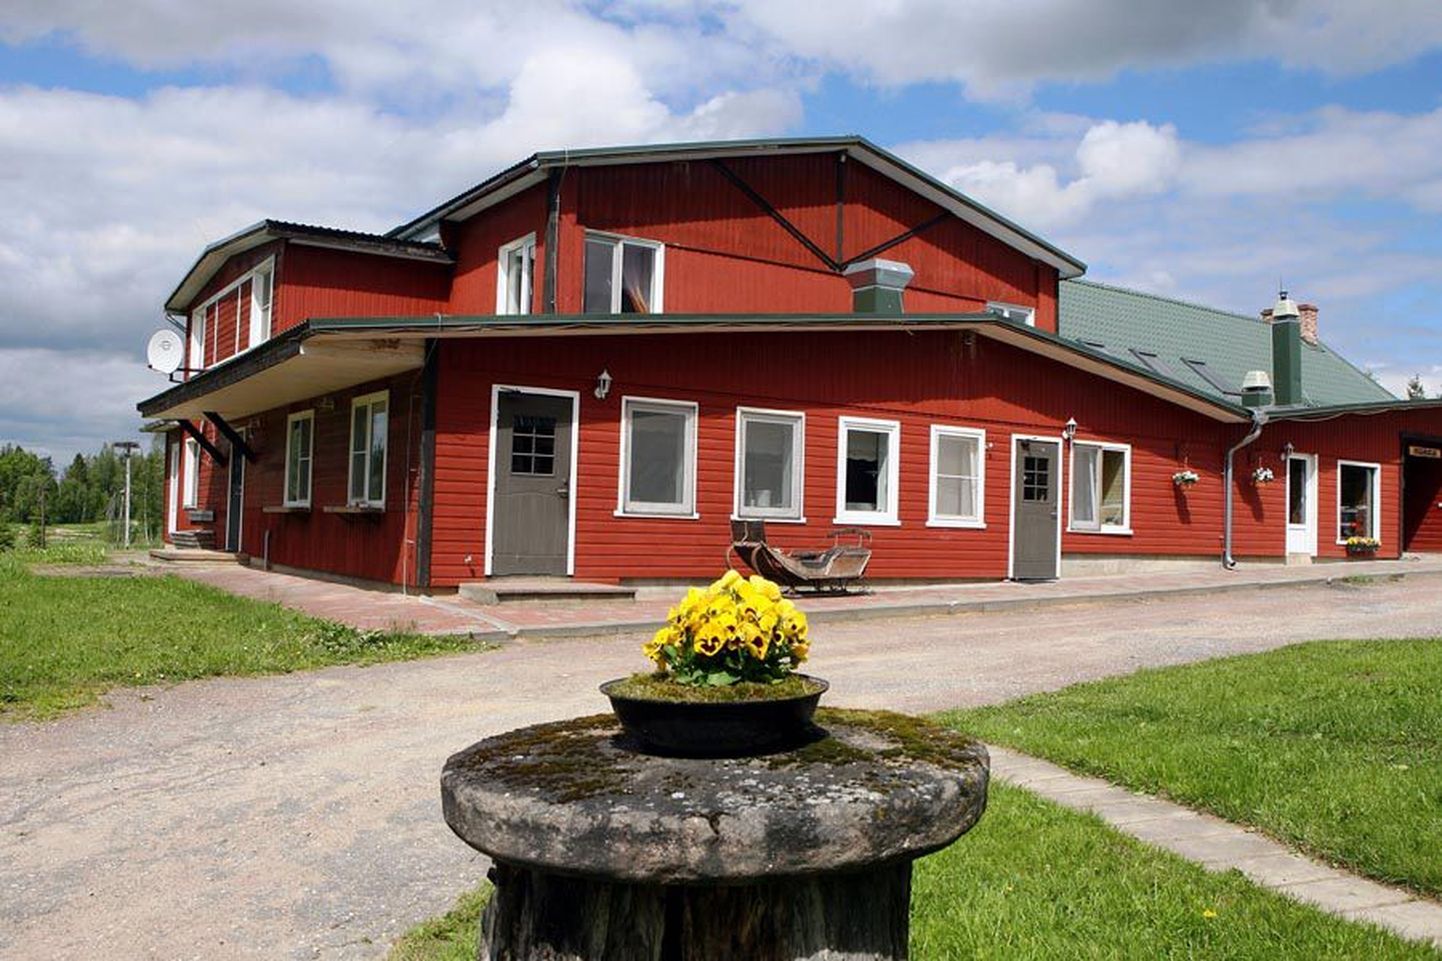 Kopra talu on aastaid olnud Viljandimaal üks populaarsemaid suvepäevade, konverentside ja koolituste korraldamise kohti.